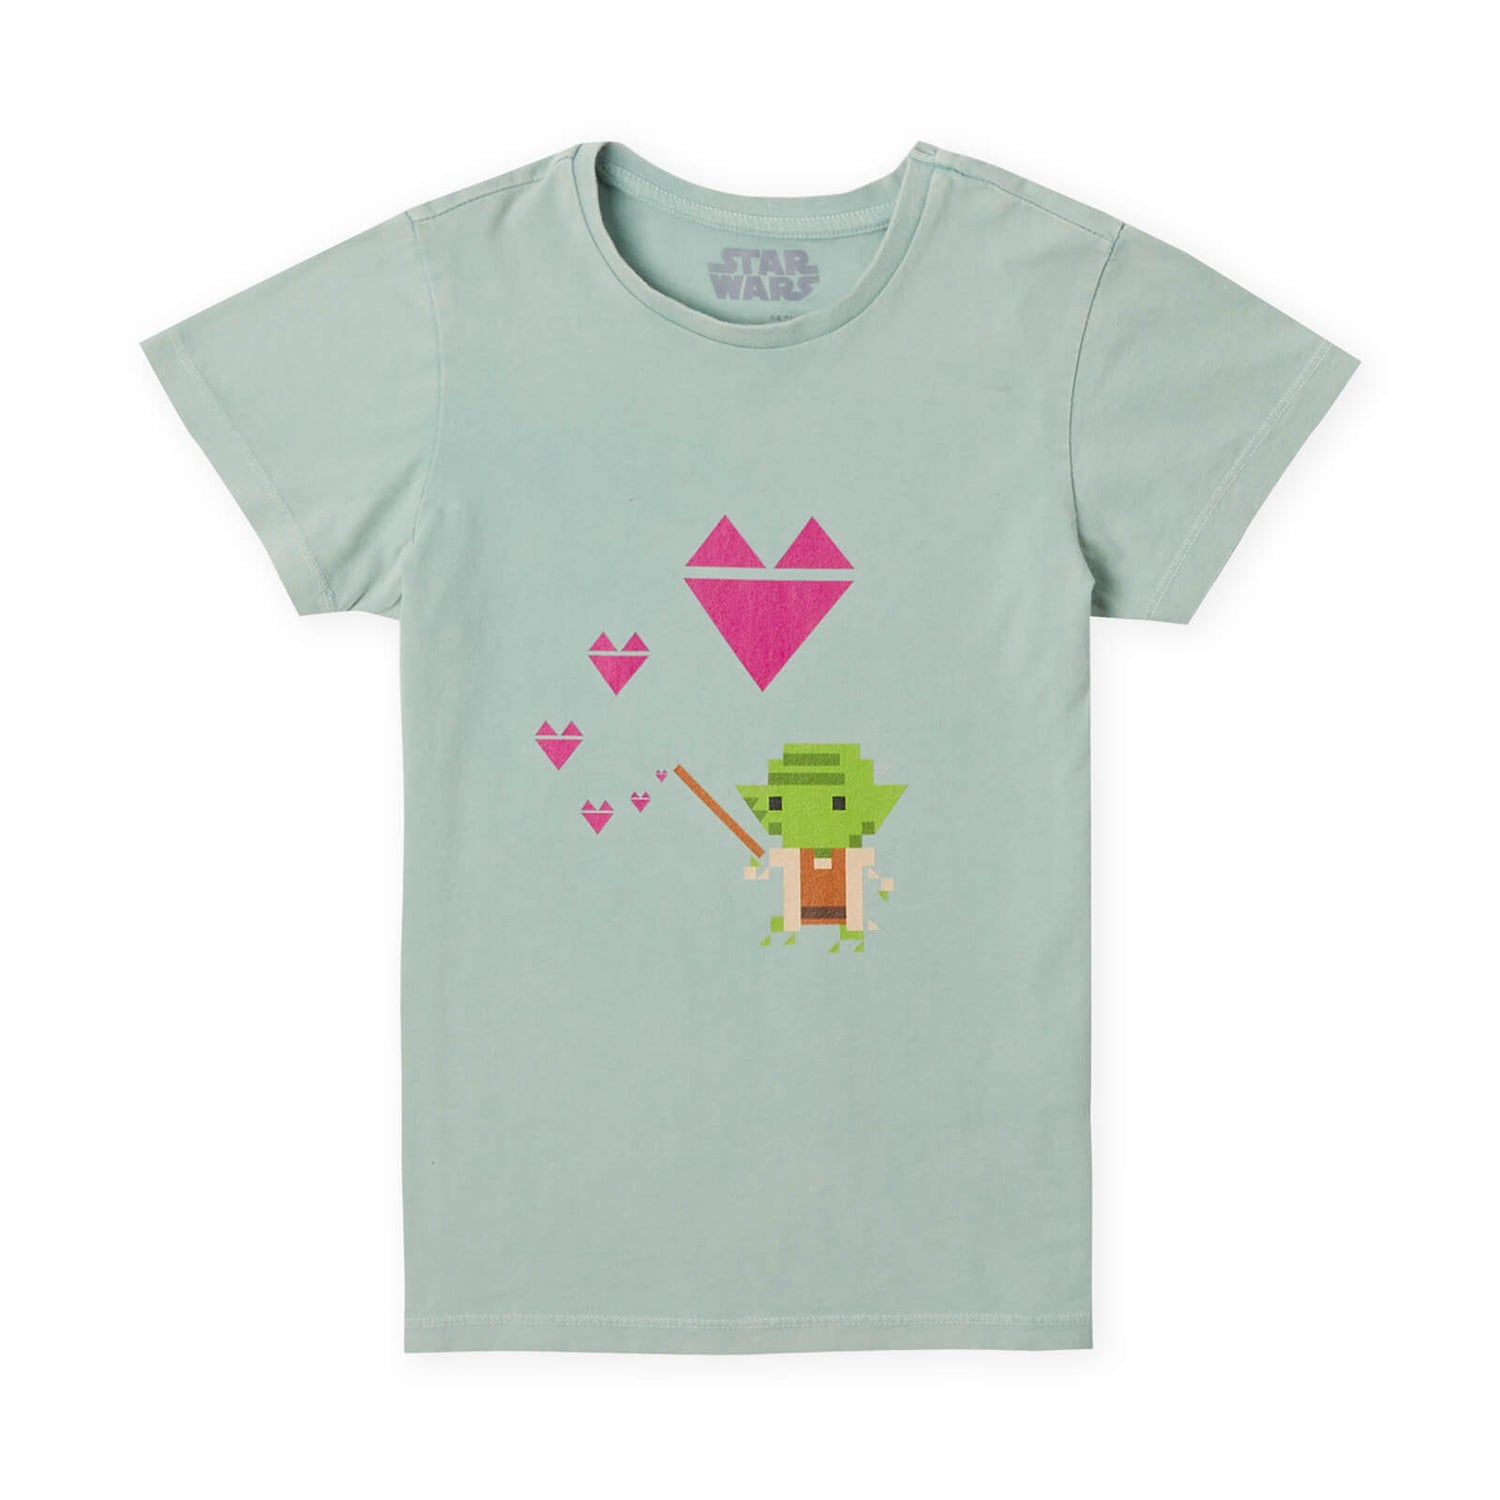 Star Wars Yoda Heart Kids' T-Shirt - Mint Acid Wash